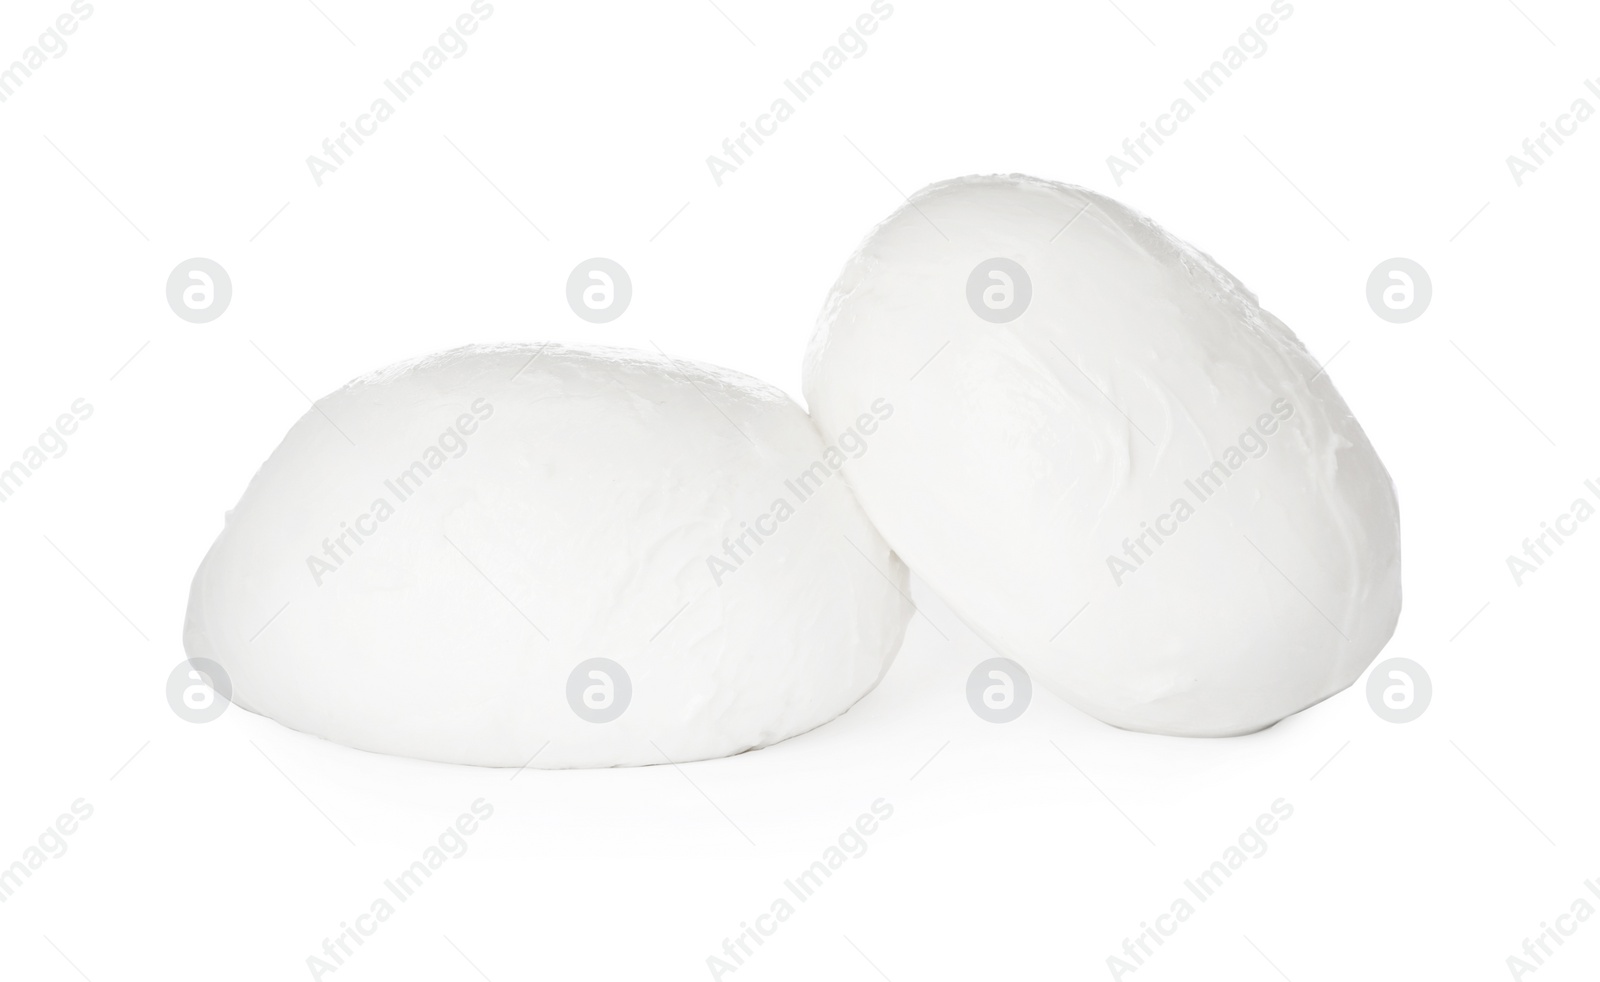 Photo of Delicious mozzarella cheese balls on white background